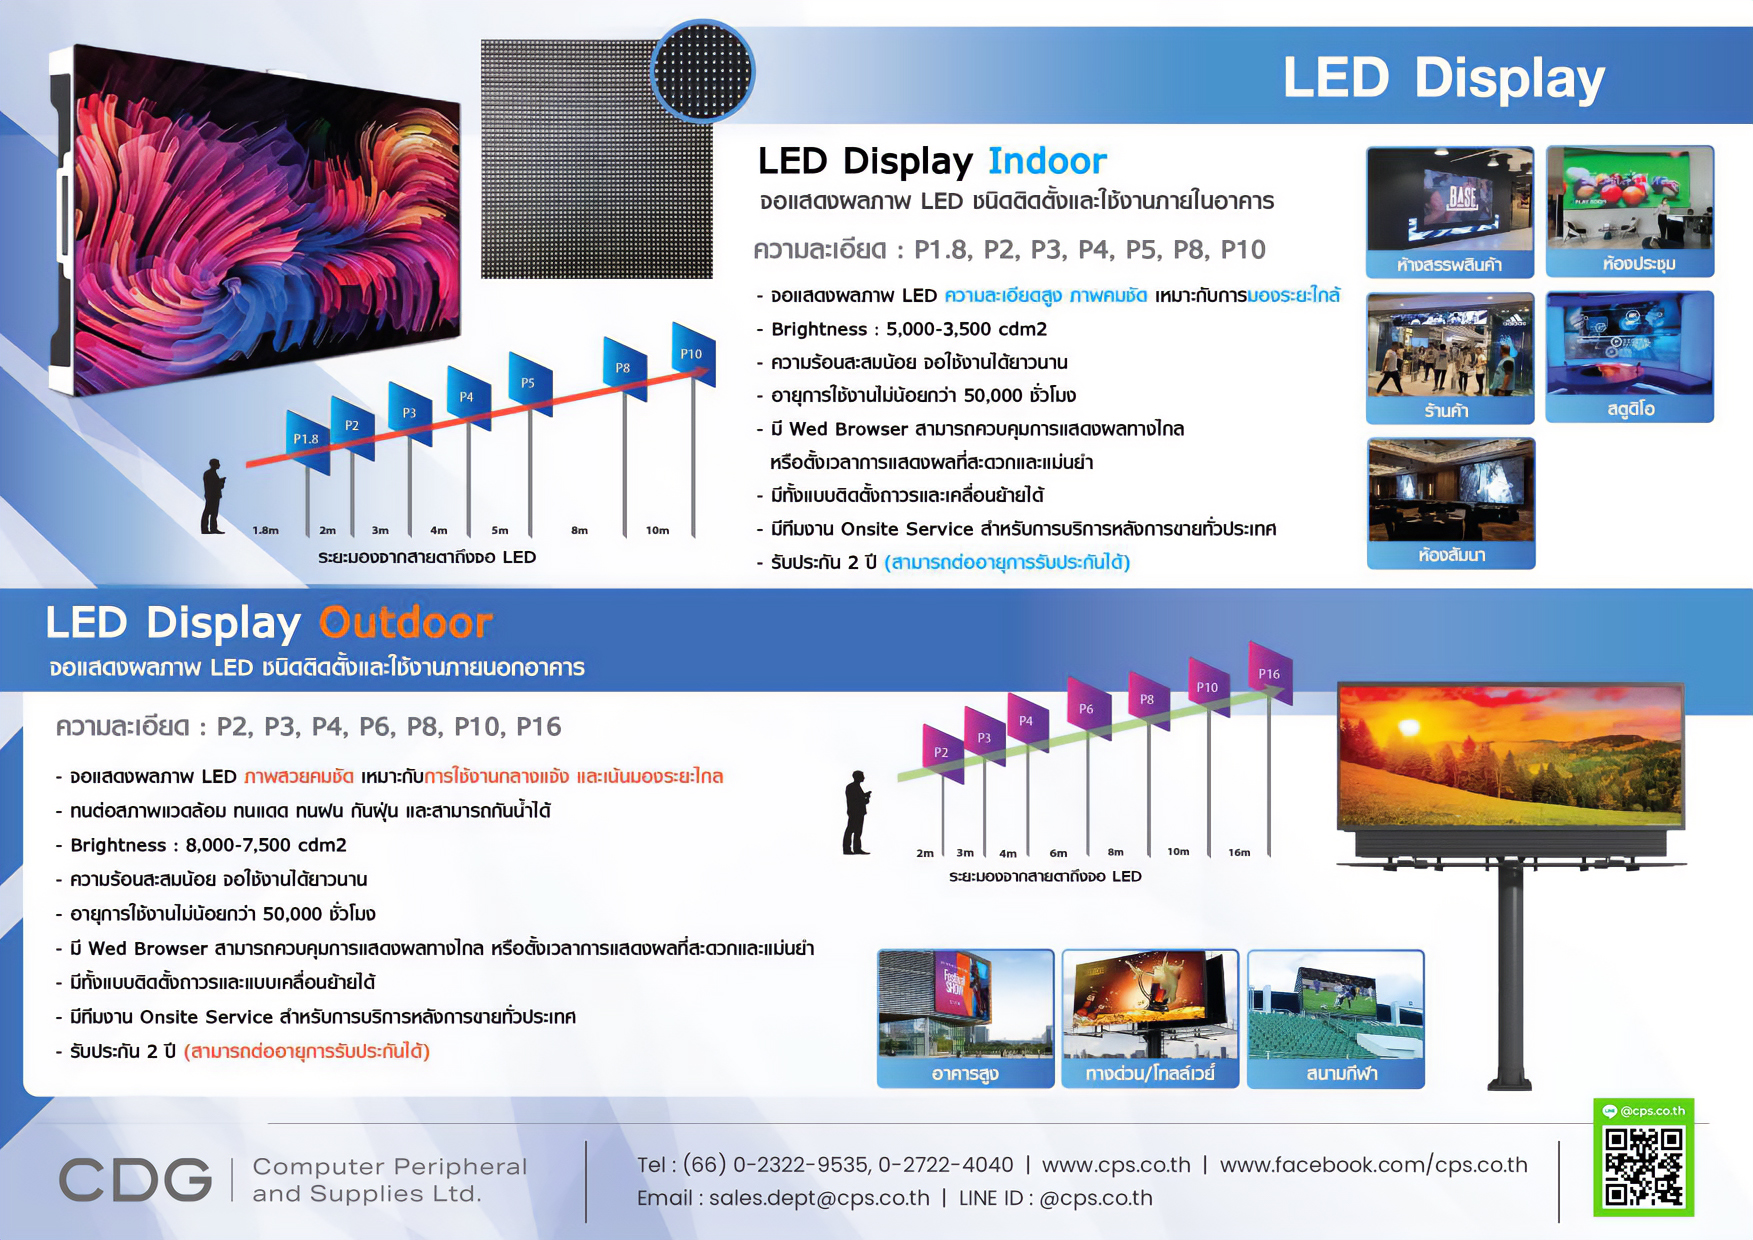 ป้ายโฆษณาดิจิตอล Digital Signage LED HL8000 (Video Wall)